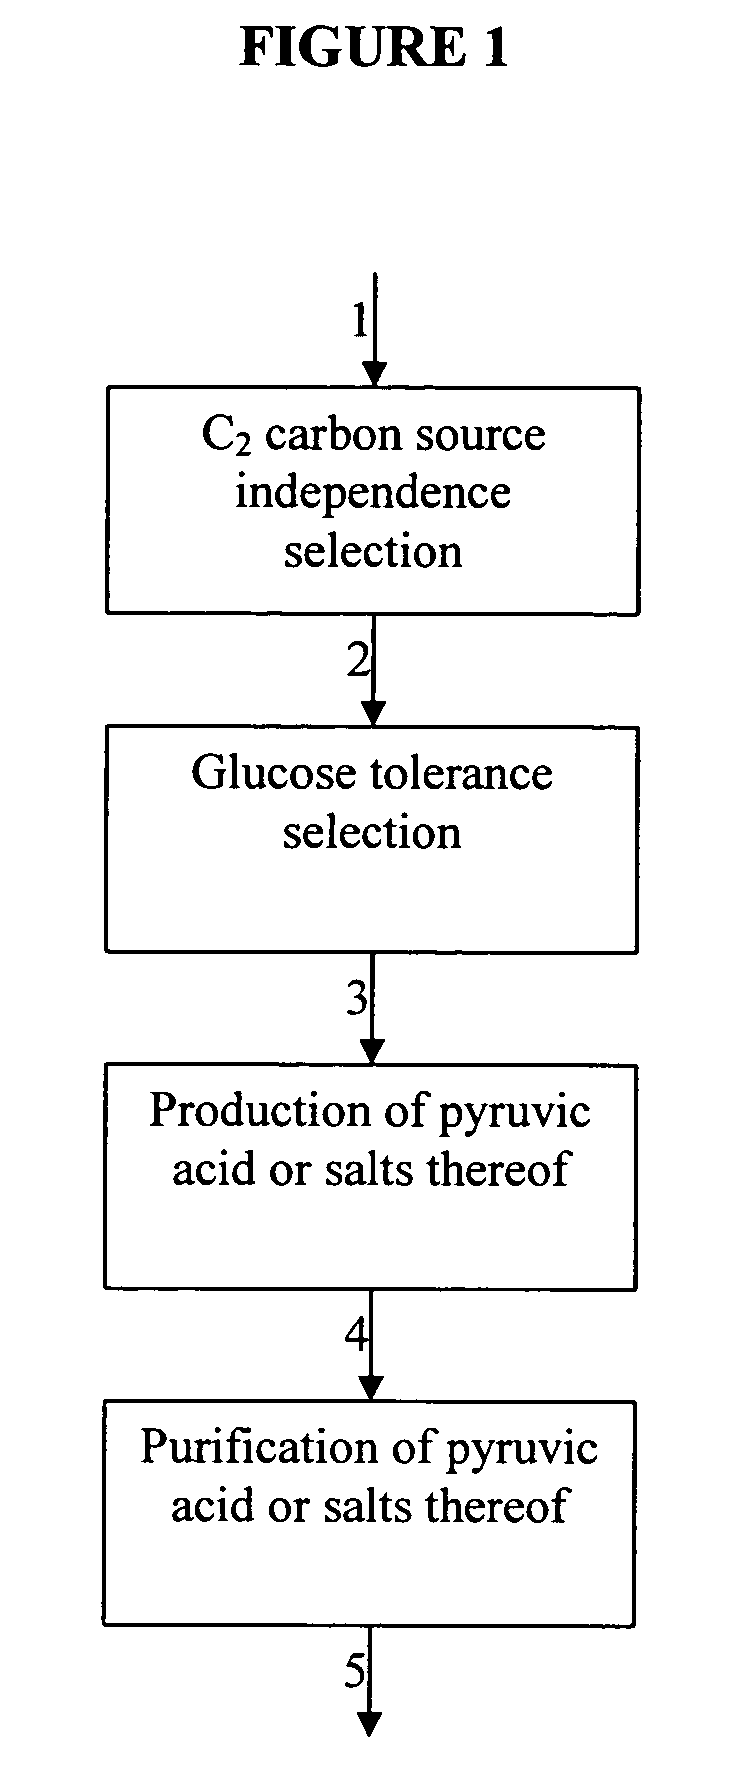 Pyruvate producing yeast strain